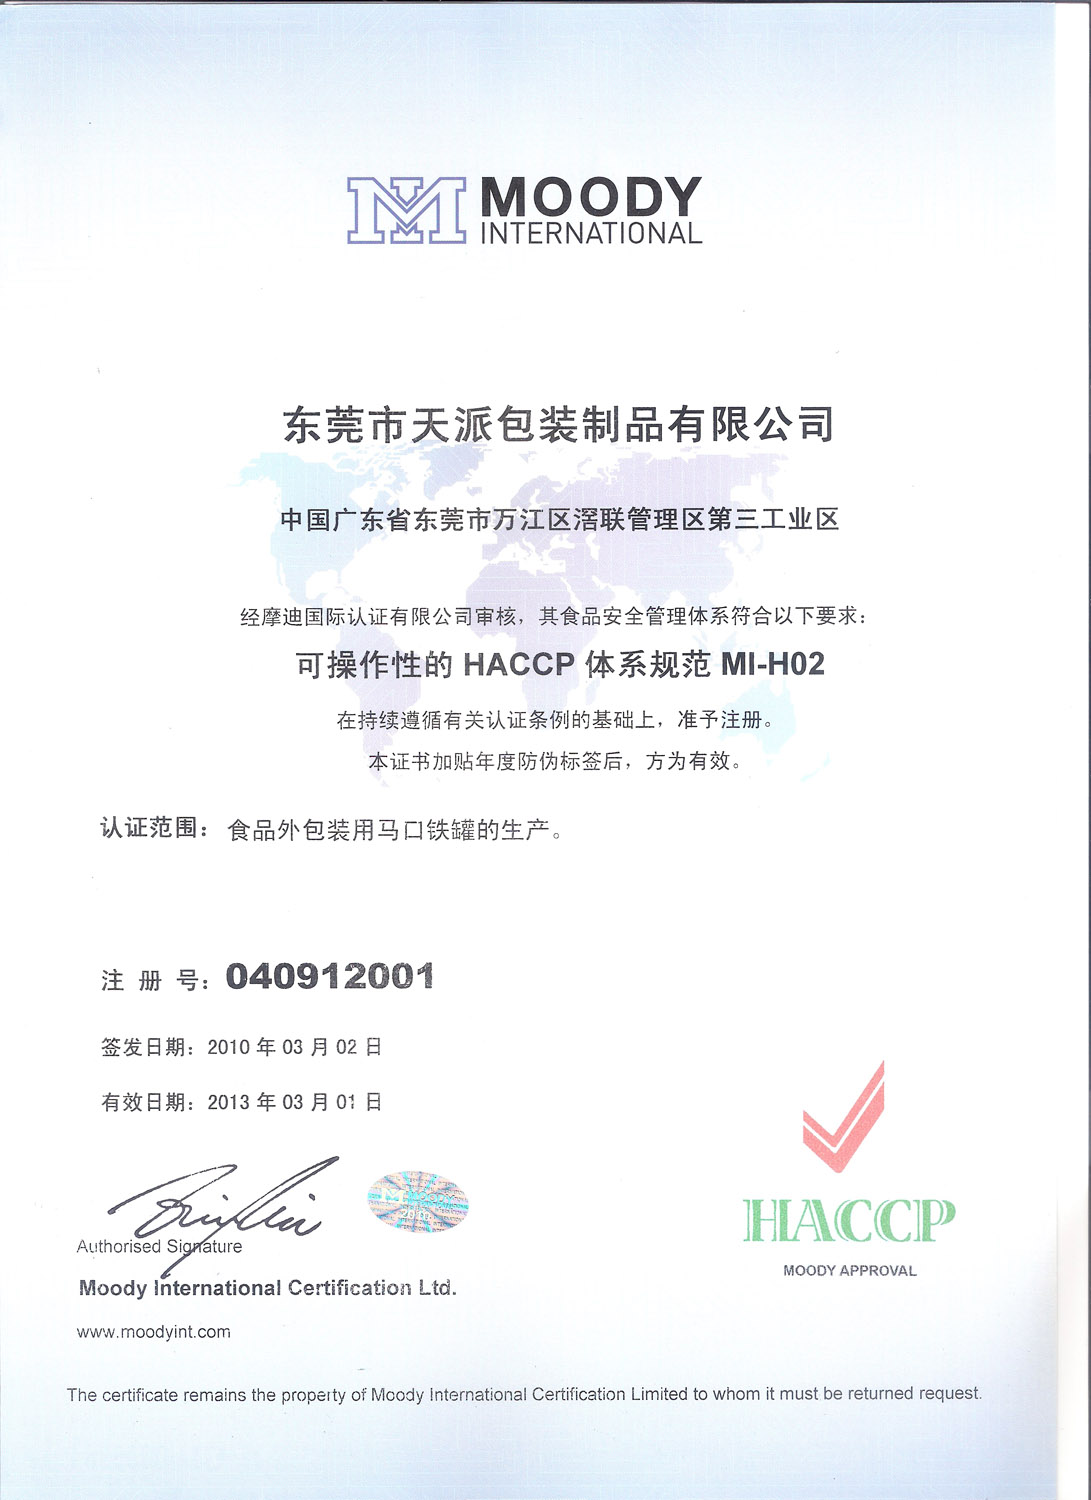 日照绿茶正方罐HACCP认证